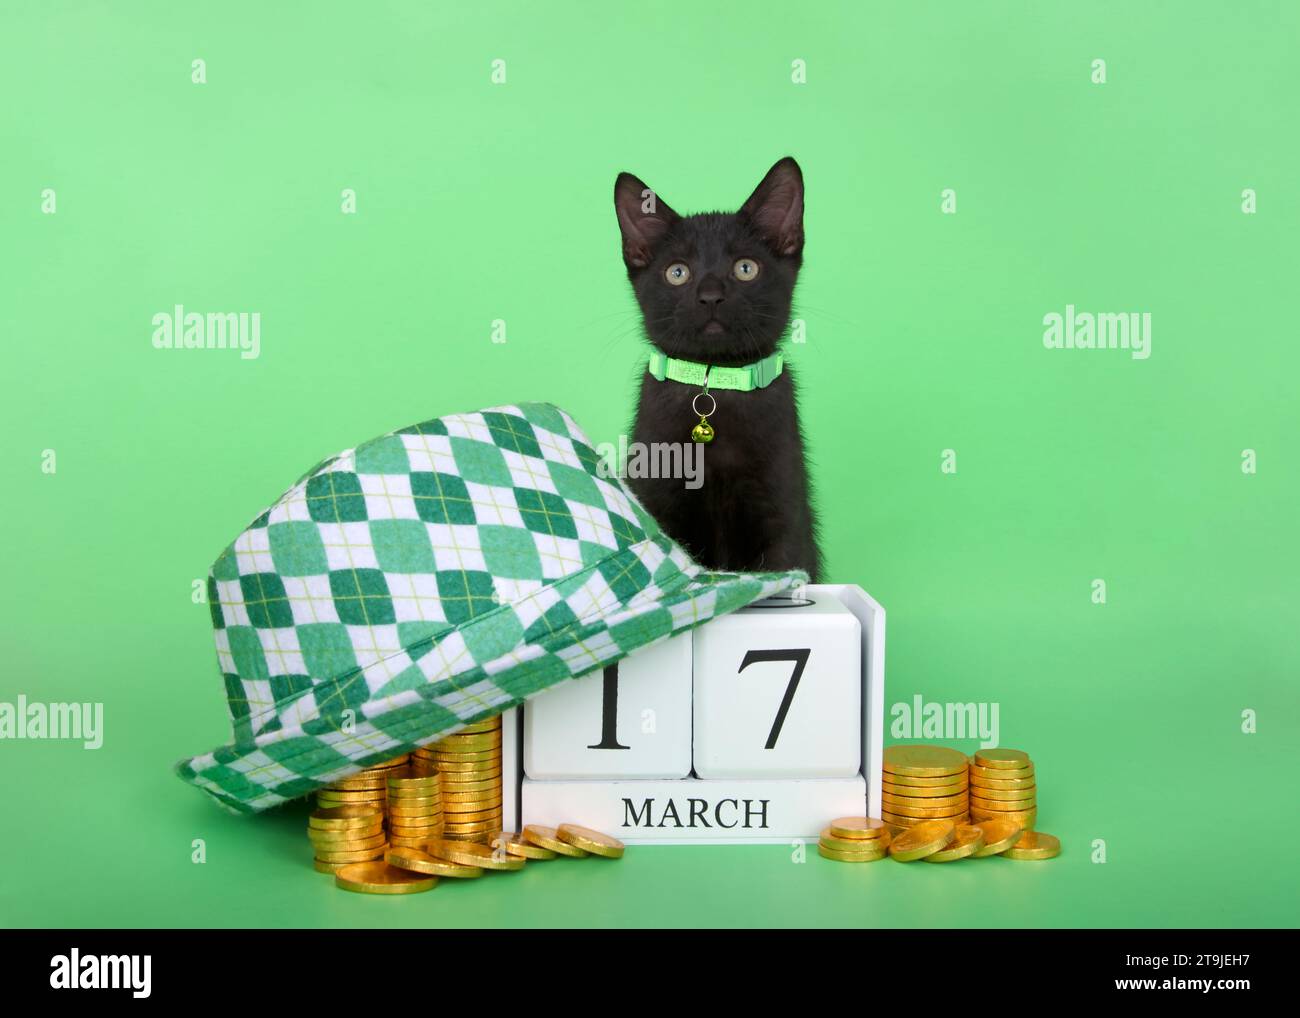 Adorable chaton noir portant un col vert assis derrière des blocs de calendrier avec date de vacances pour la Saint Patrick, le 17 mars. Entouré de piles Banque D'Images